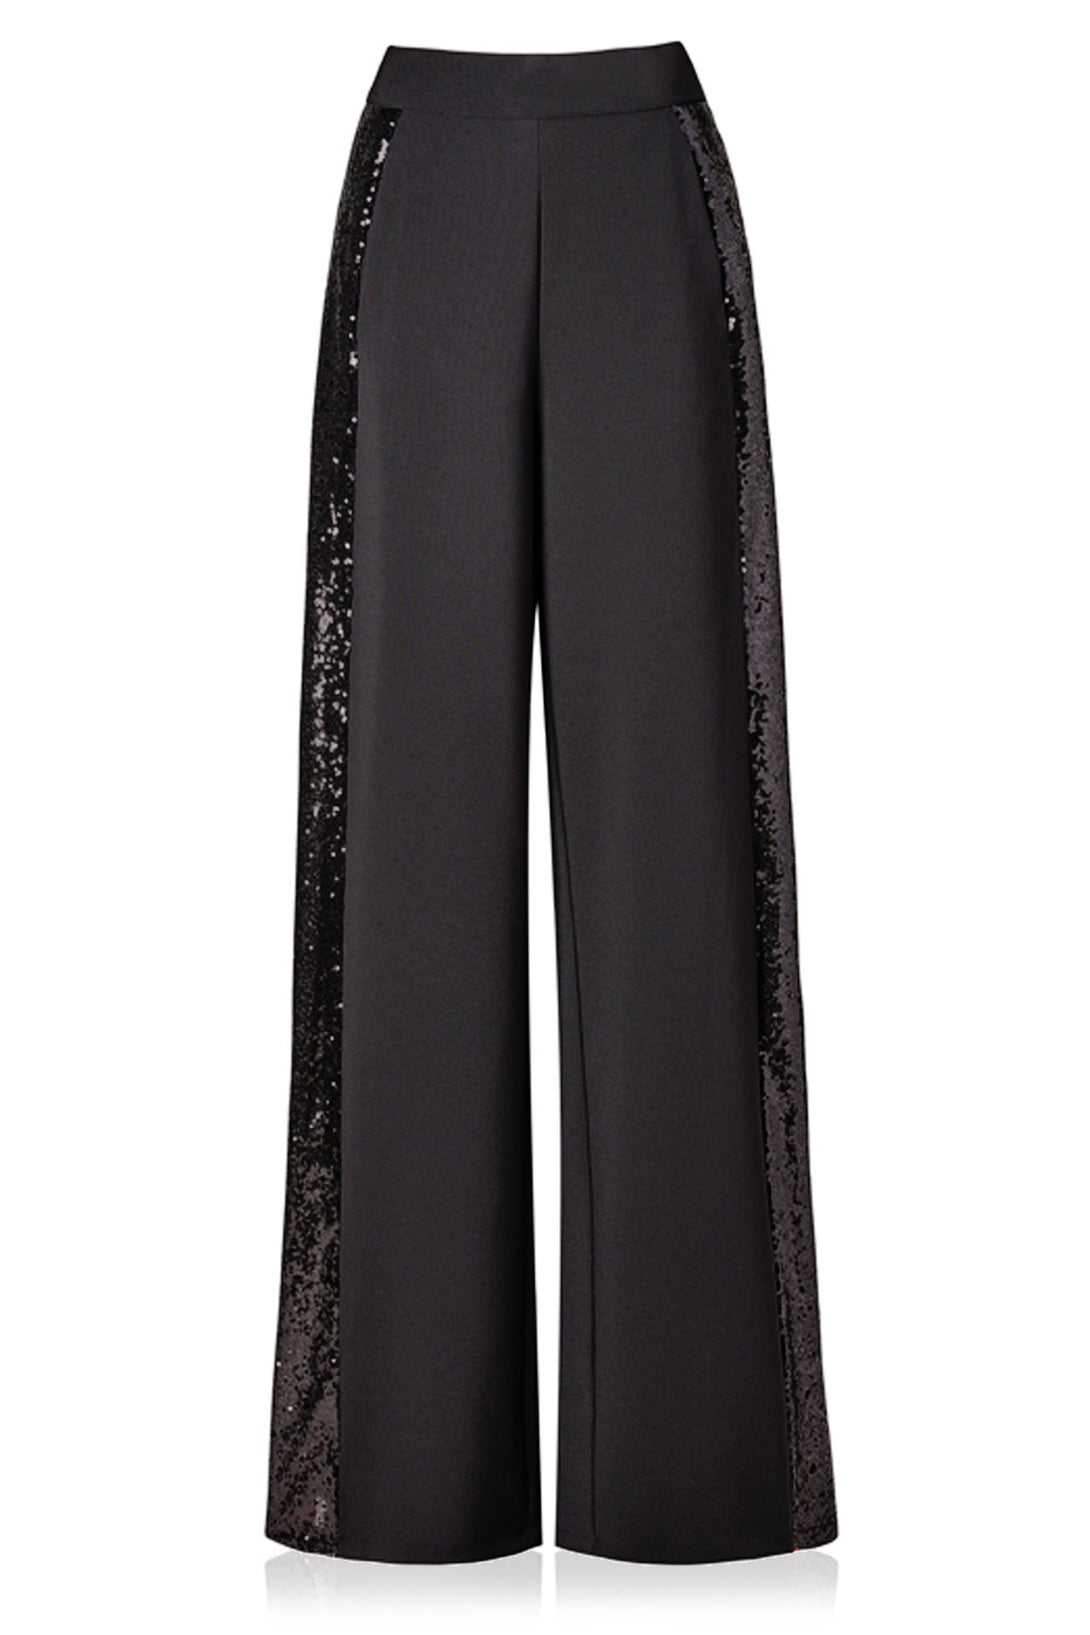 "sequin pant suit black" "sequin full body suit" "sequence suit for women" "Shahida Parides"